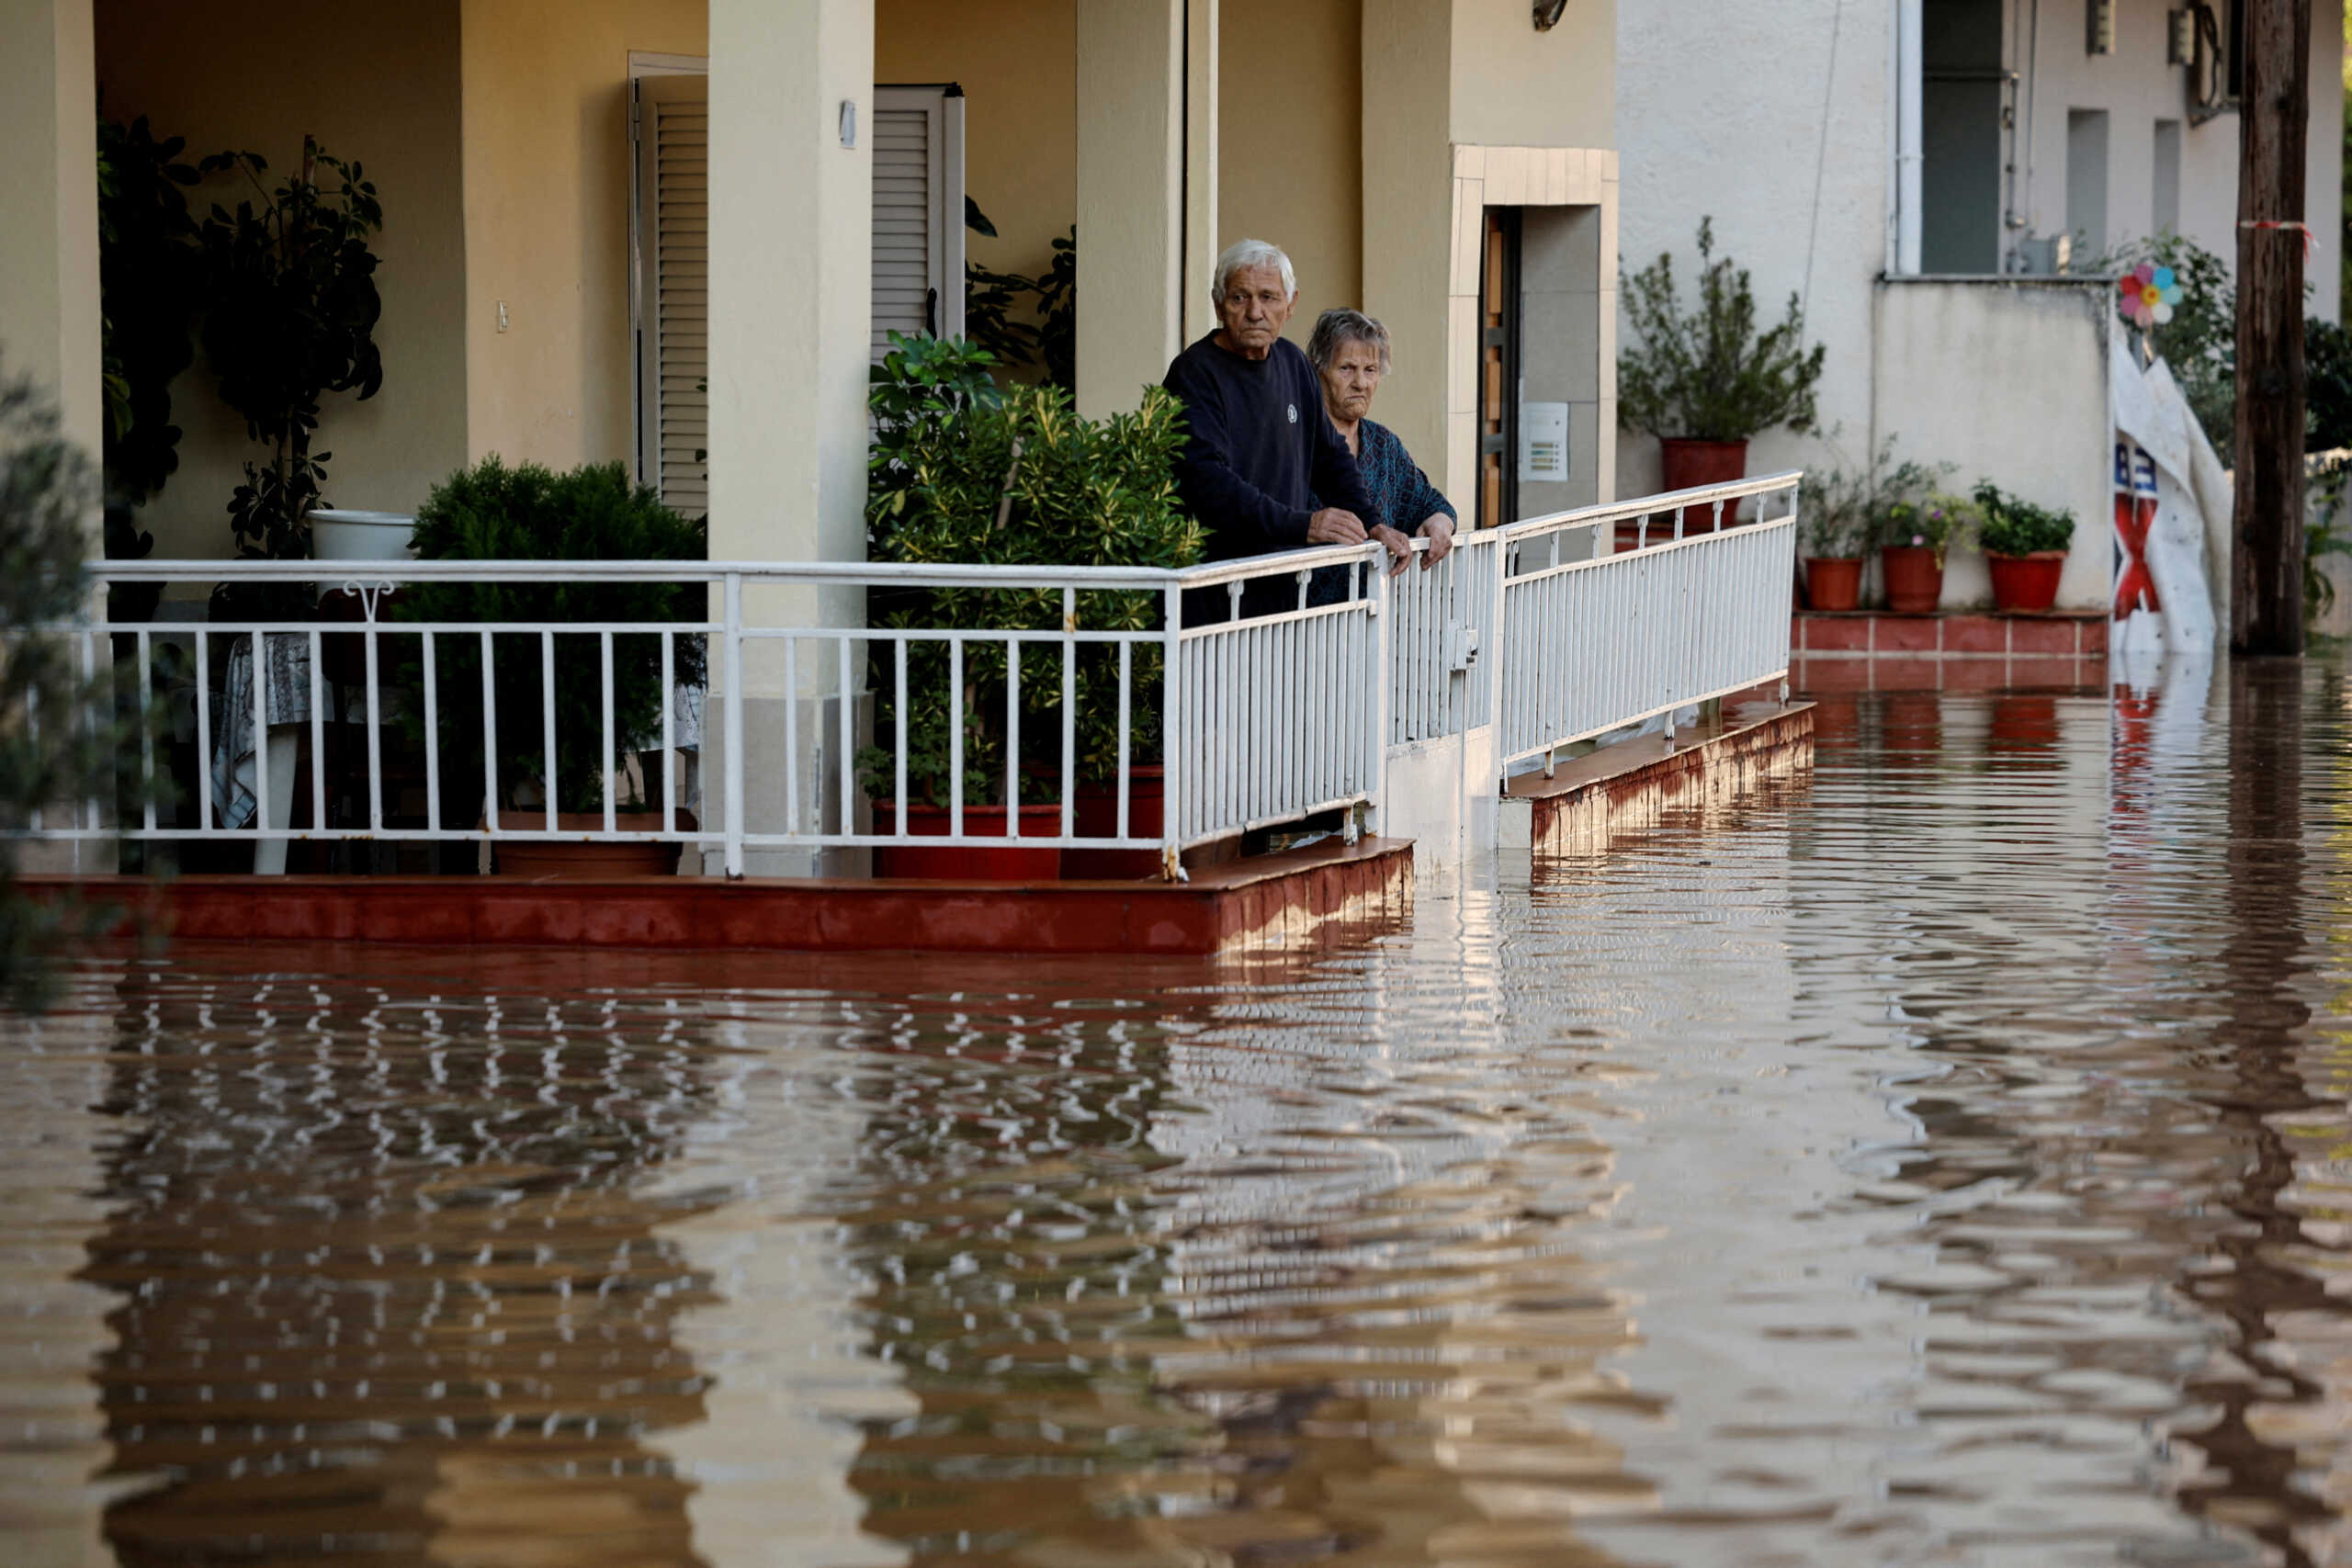 ΔΕΔΔΗΕ: Προσοχή για την ασφαλή επανηλεκτροδότηση σπιτιών και καταστημάτων στις πλημμυρισμένες περιοχές